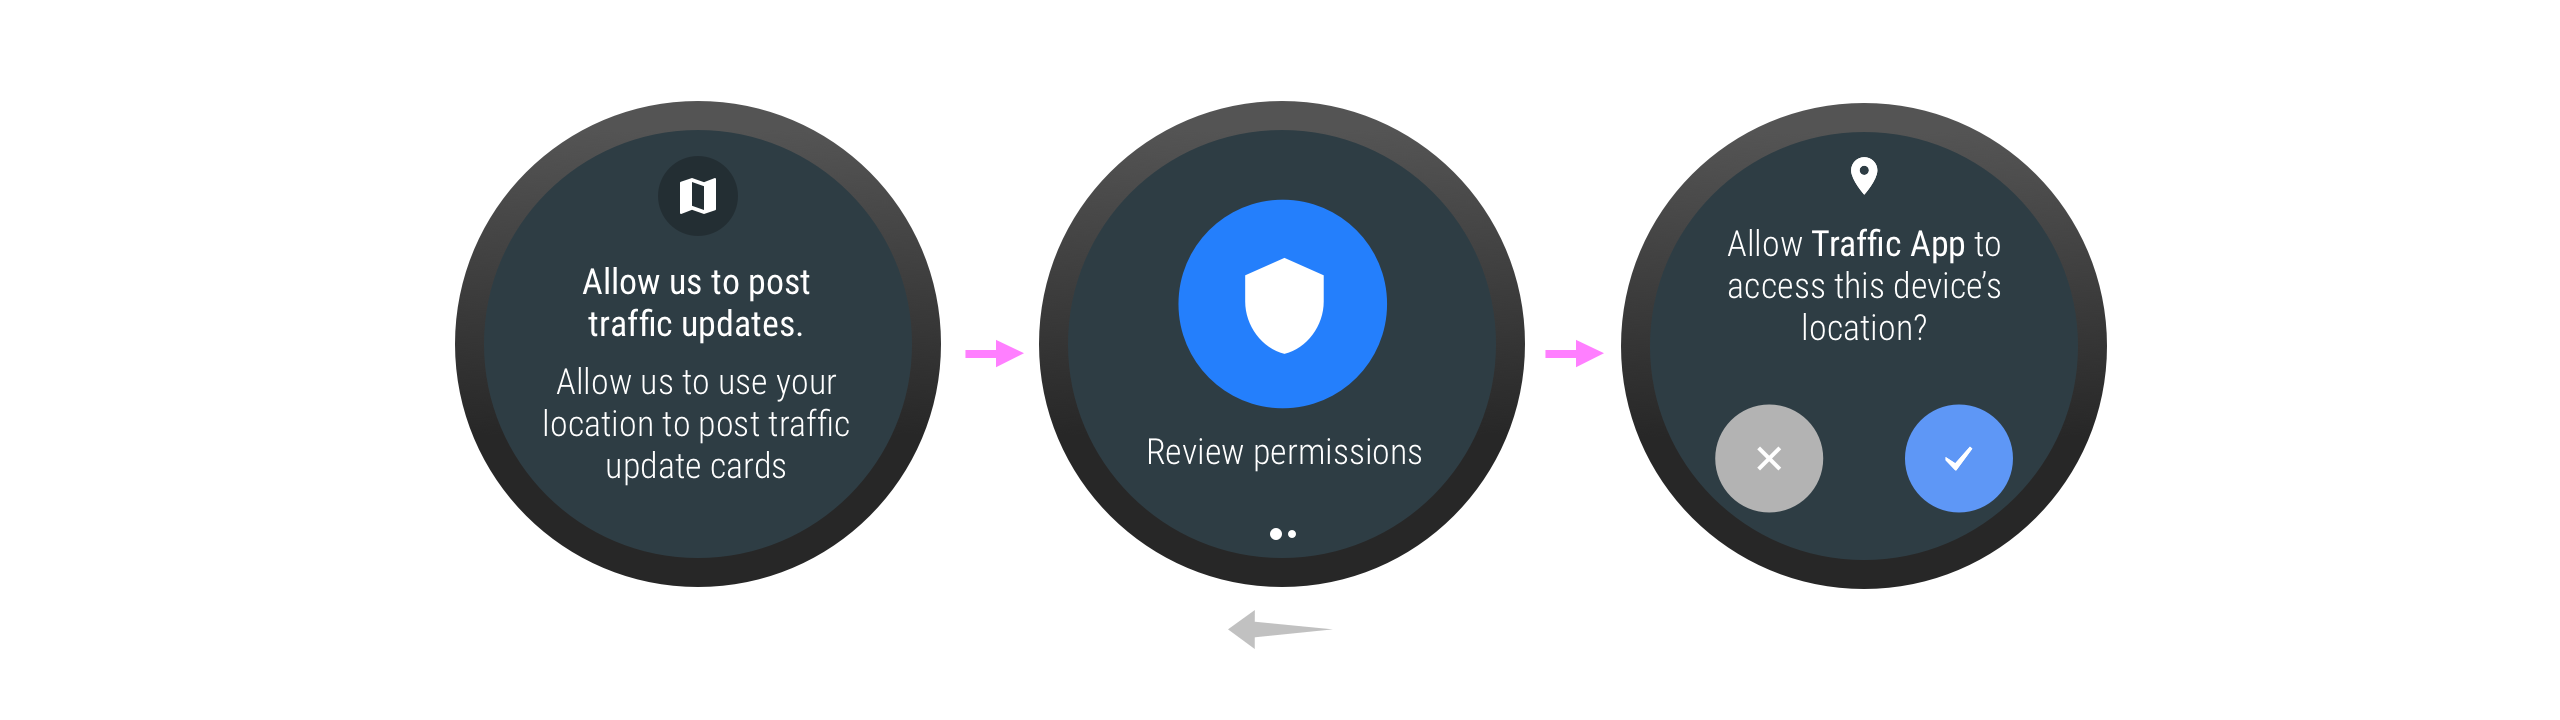 El usuario podría necesitar otorgar un permiso al interactuar de forma indirecta con una app, mediante un servicio.